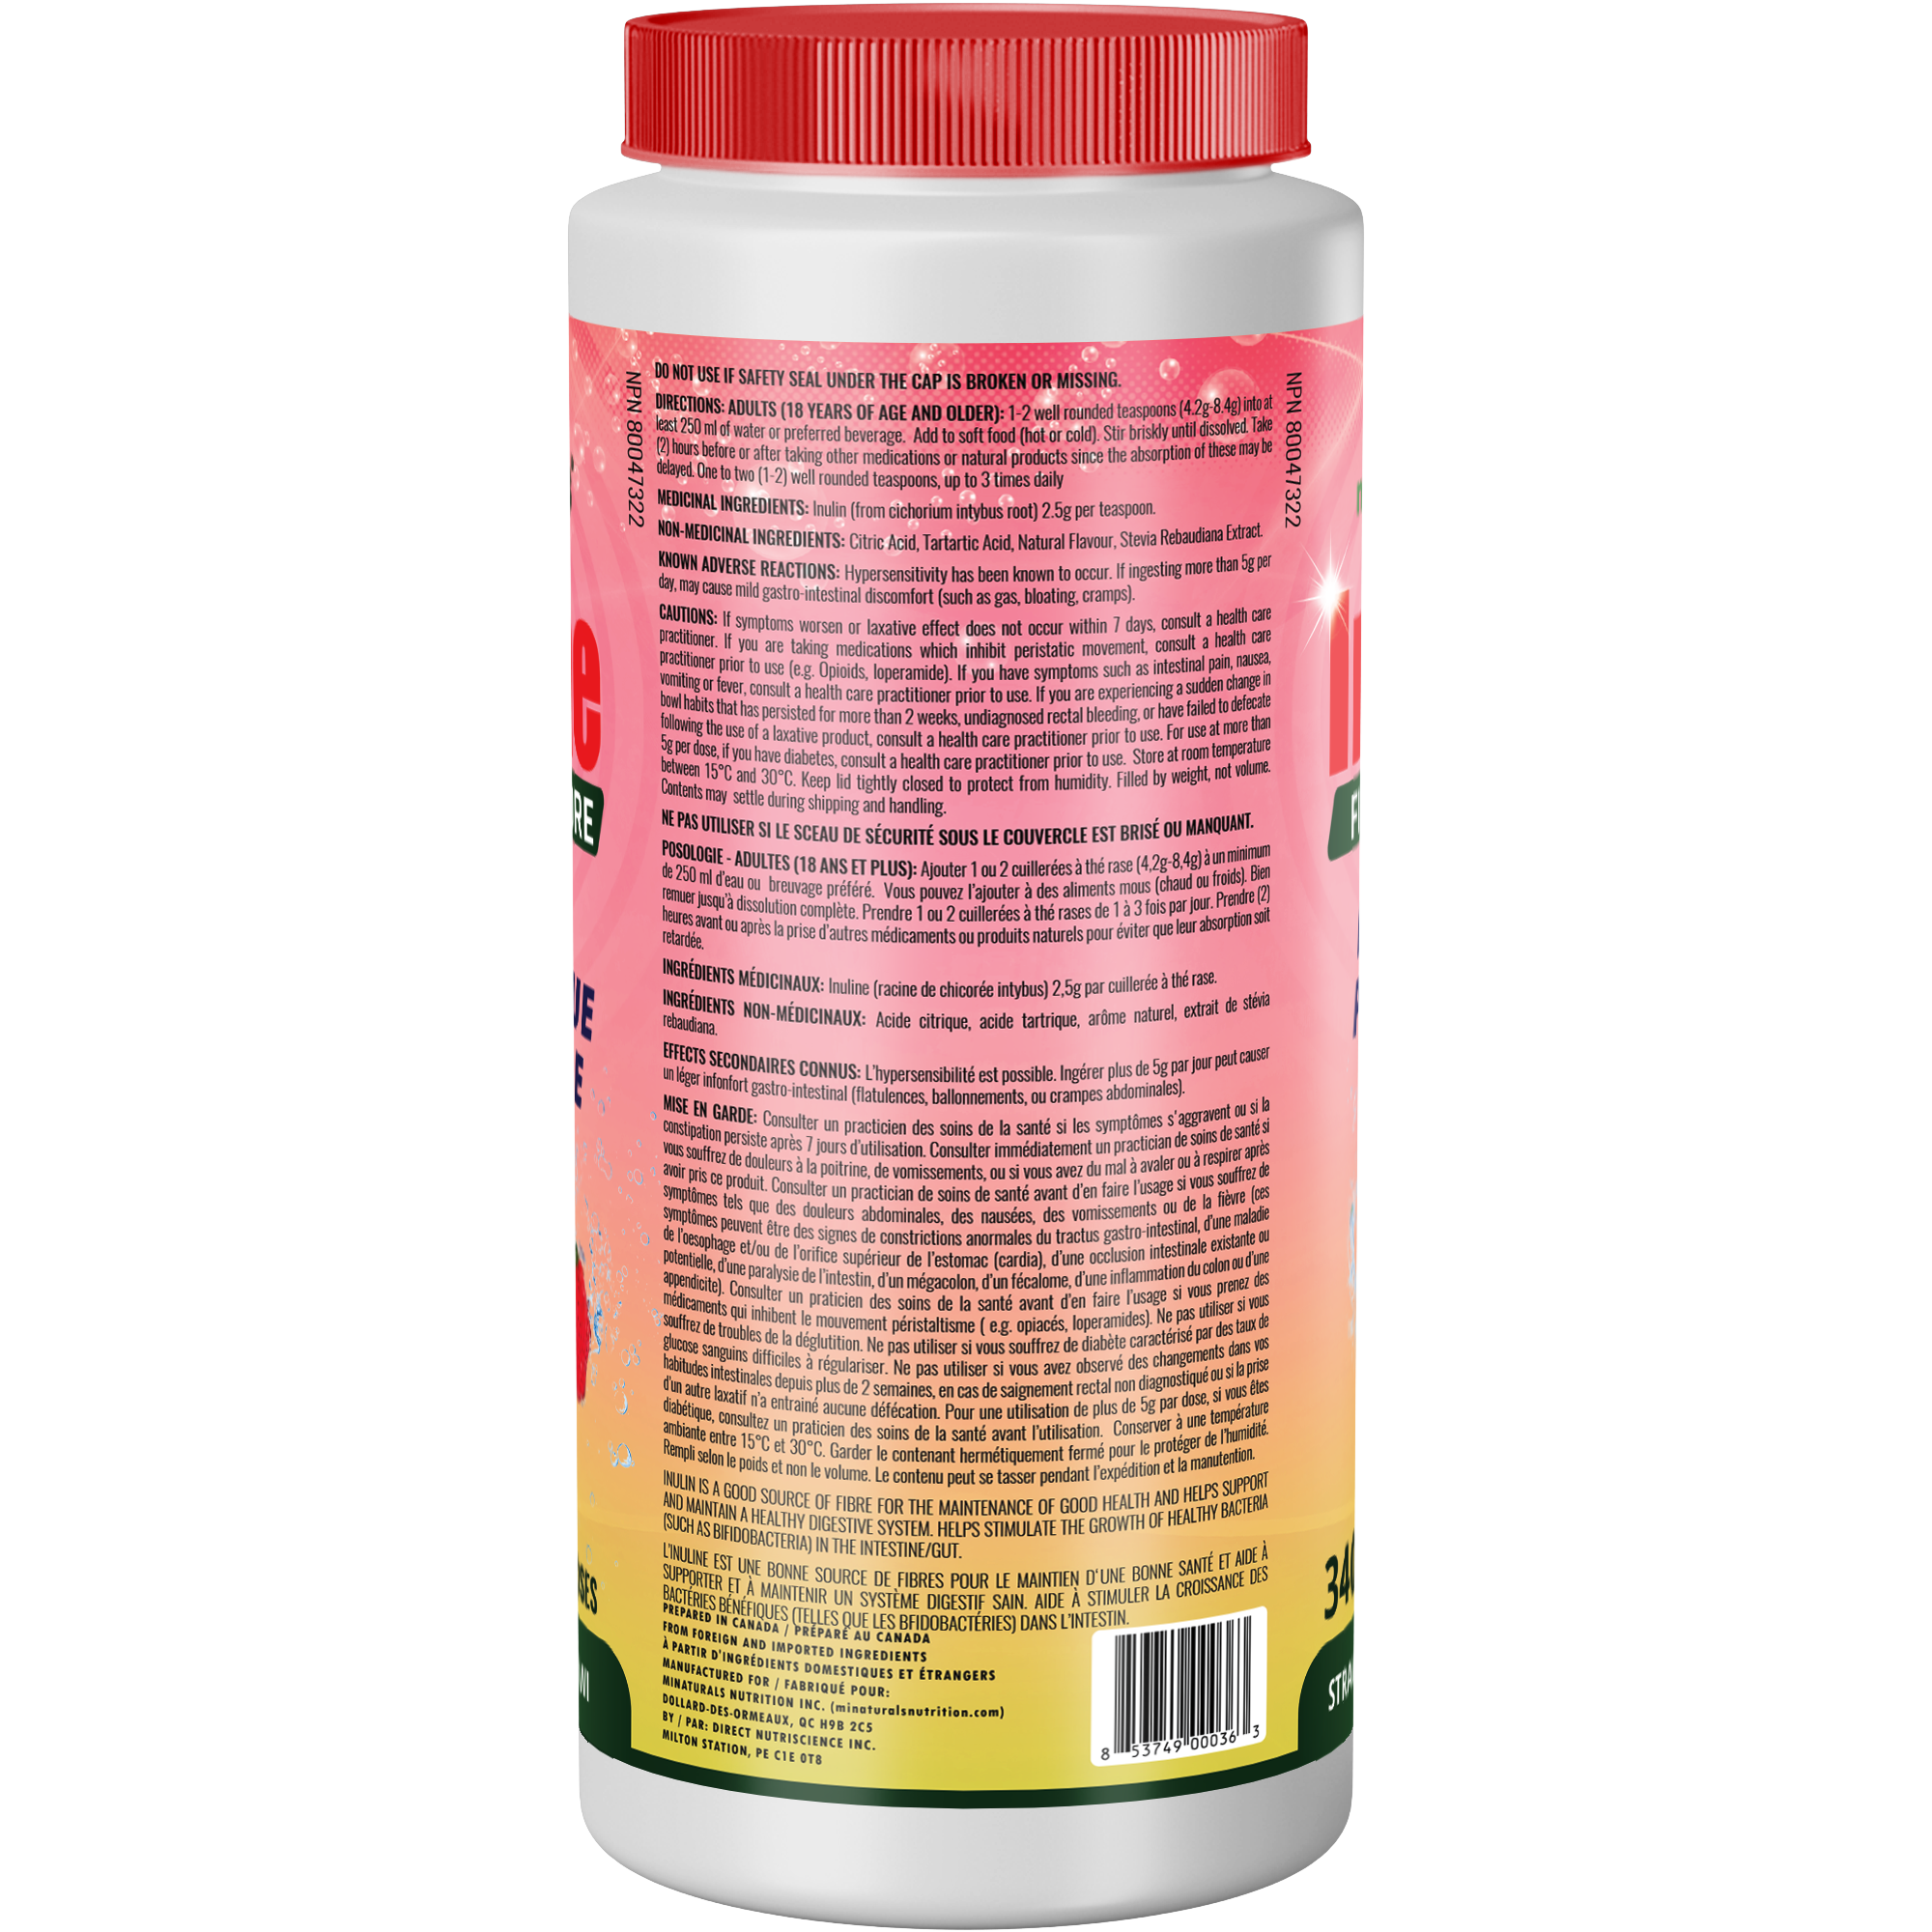 Poudre de fibres d'inuline pure - Supplément de fibres prébiotiques naturelles (340 g - 106 doses) - Arôme fraise/kiwi